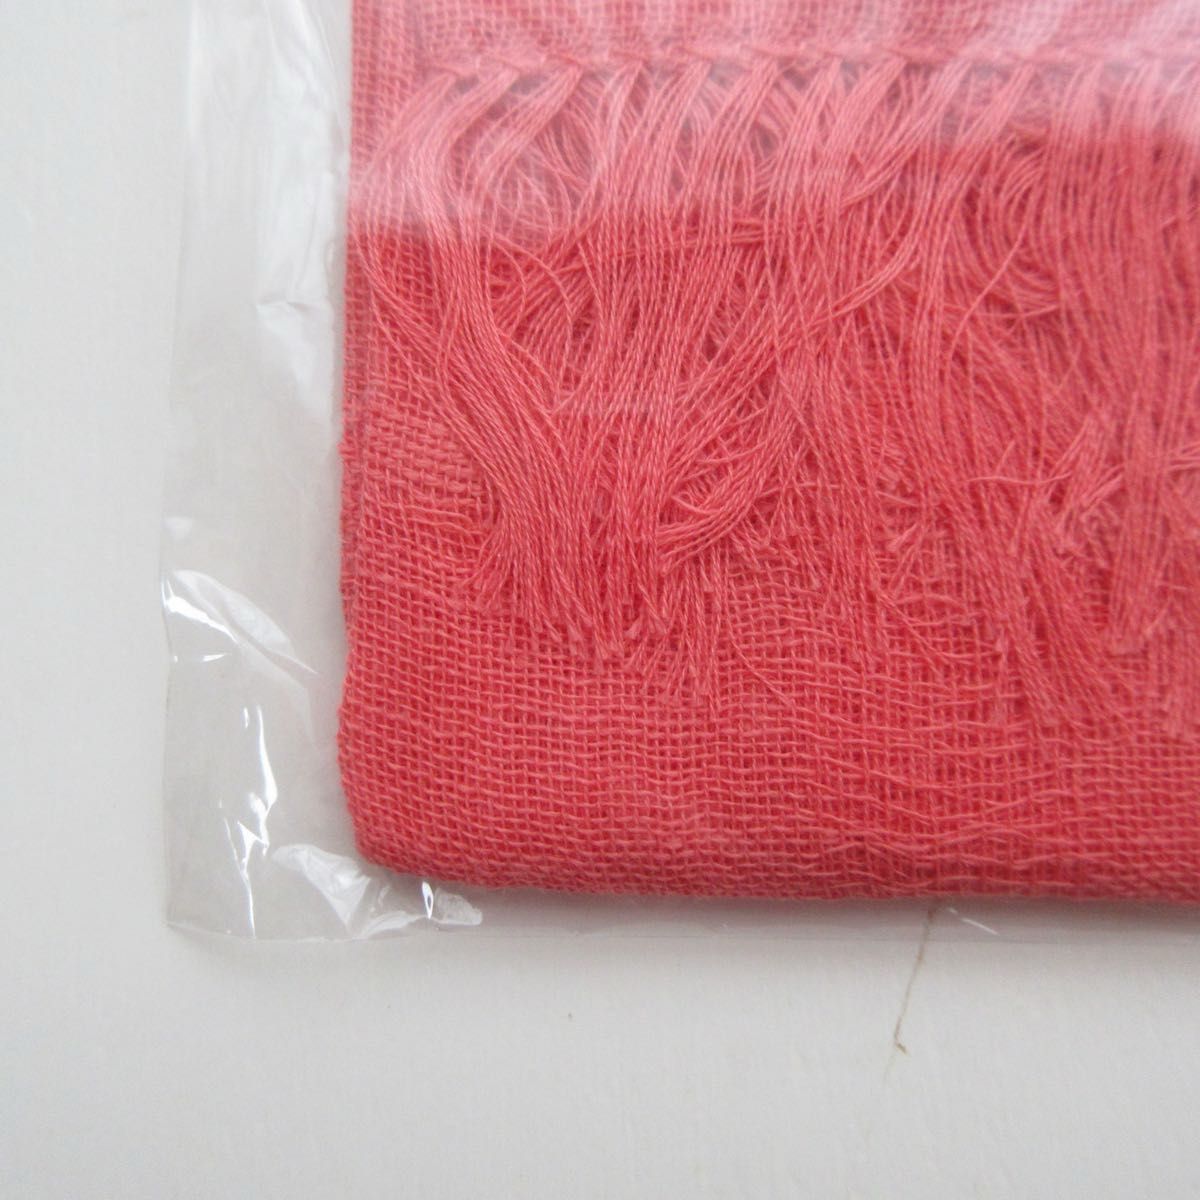 新品 内野 UCHINO 軽量糸 ガーゼ マフラー ストール 綿100%薄手のガーゼ織り 抗菌防臭加工UV対策 軽く柔らかな肌触り